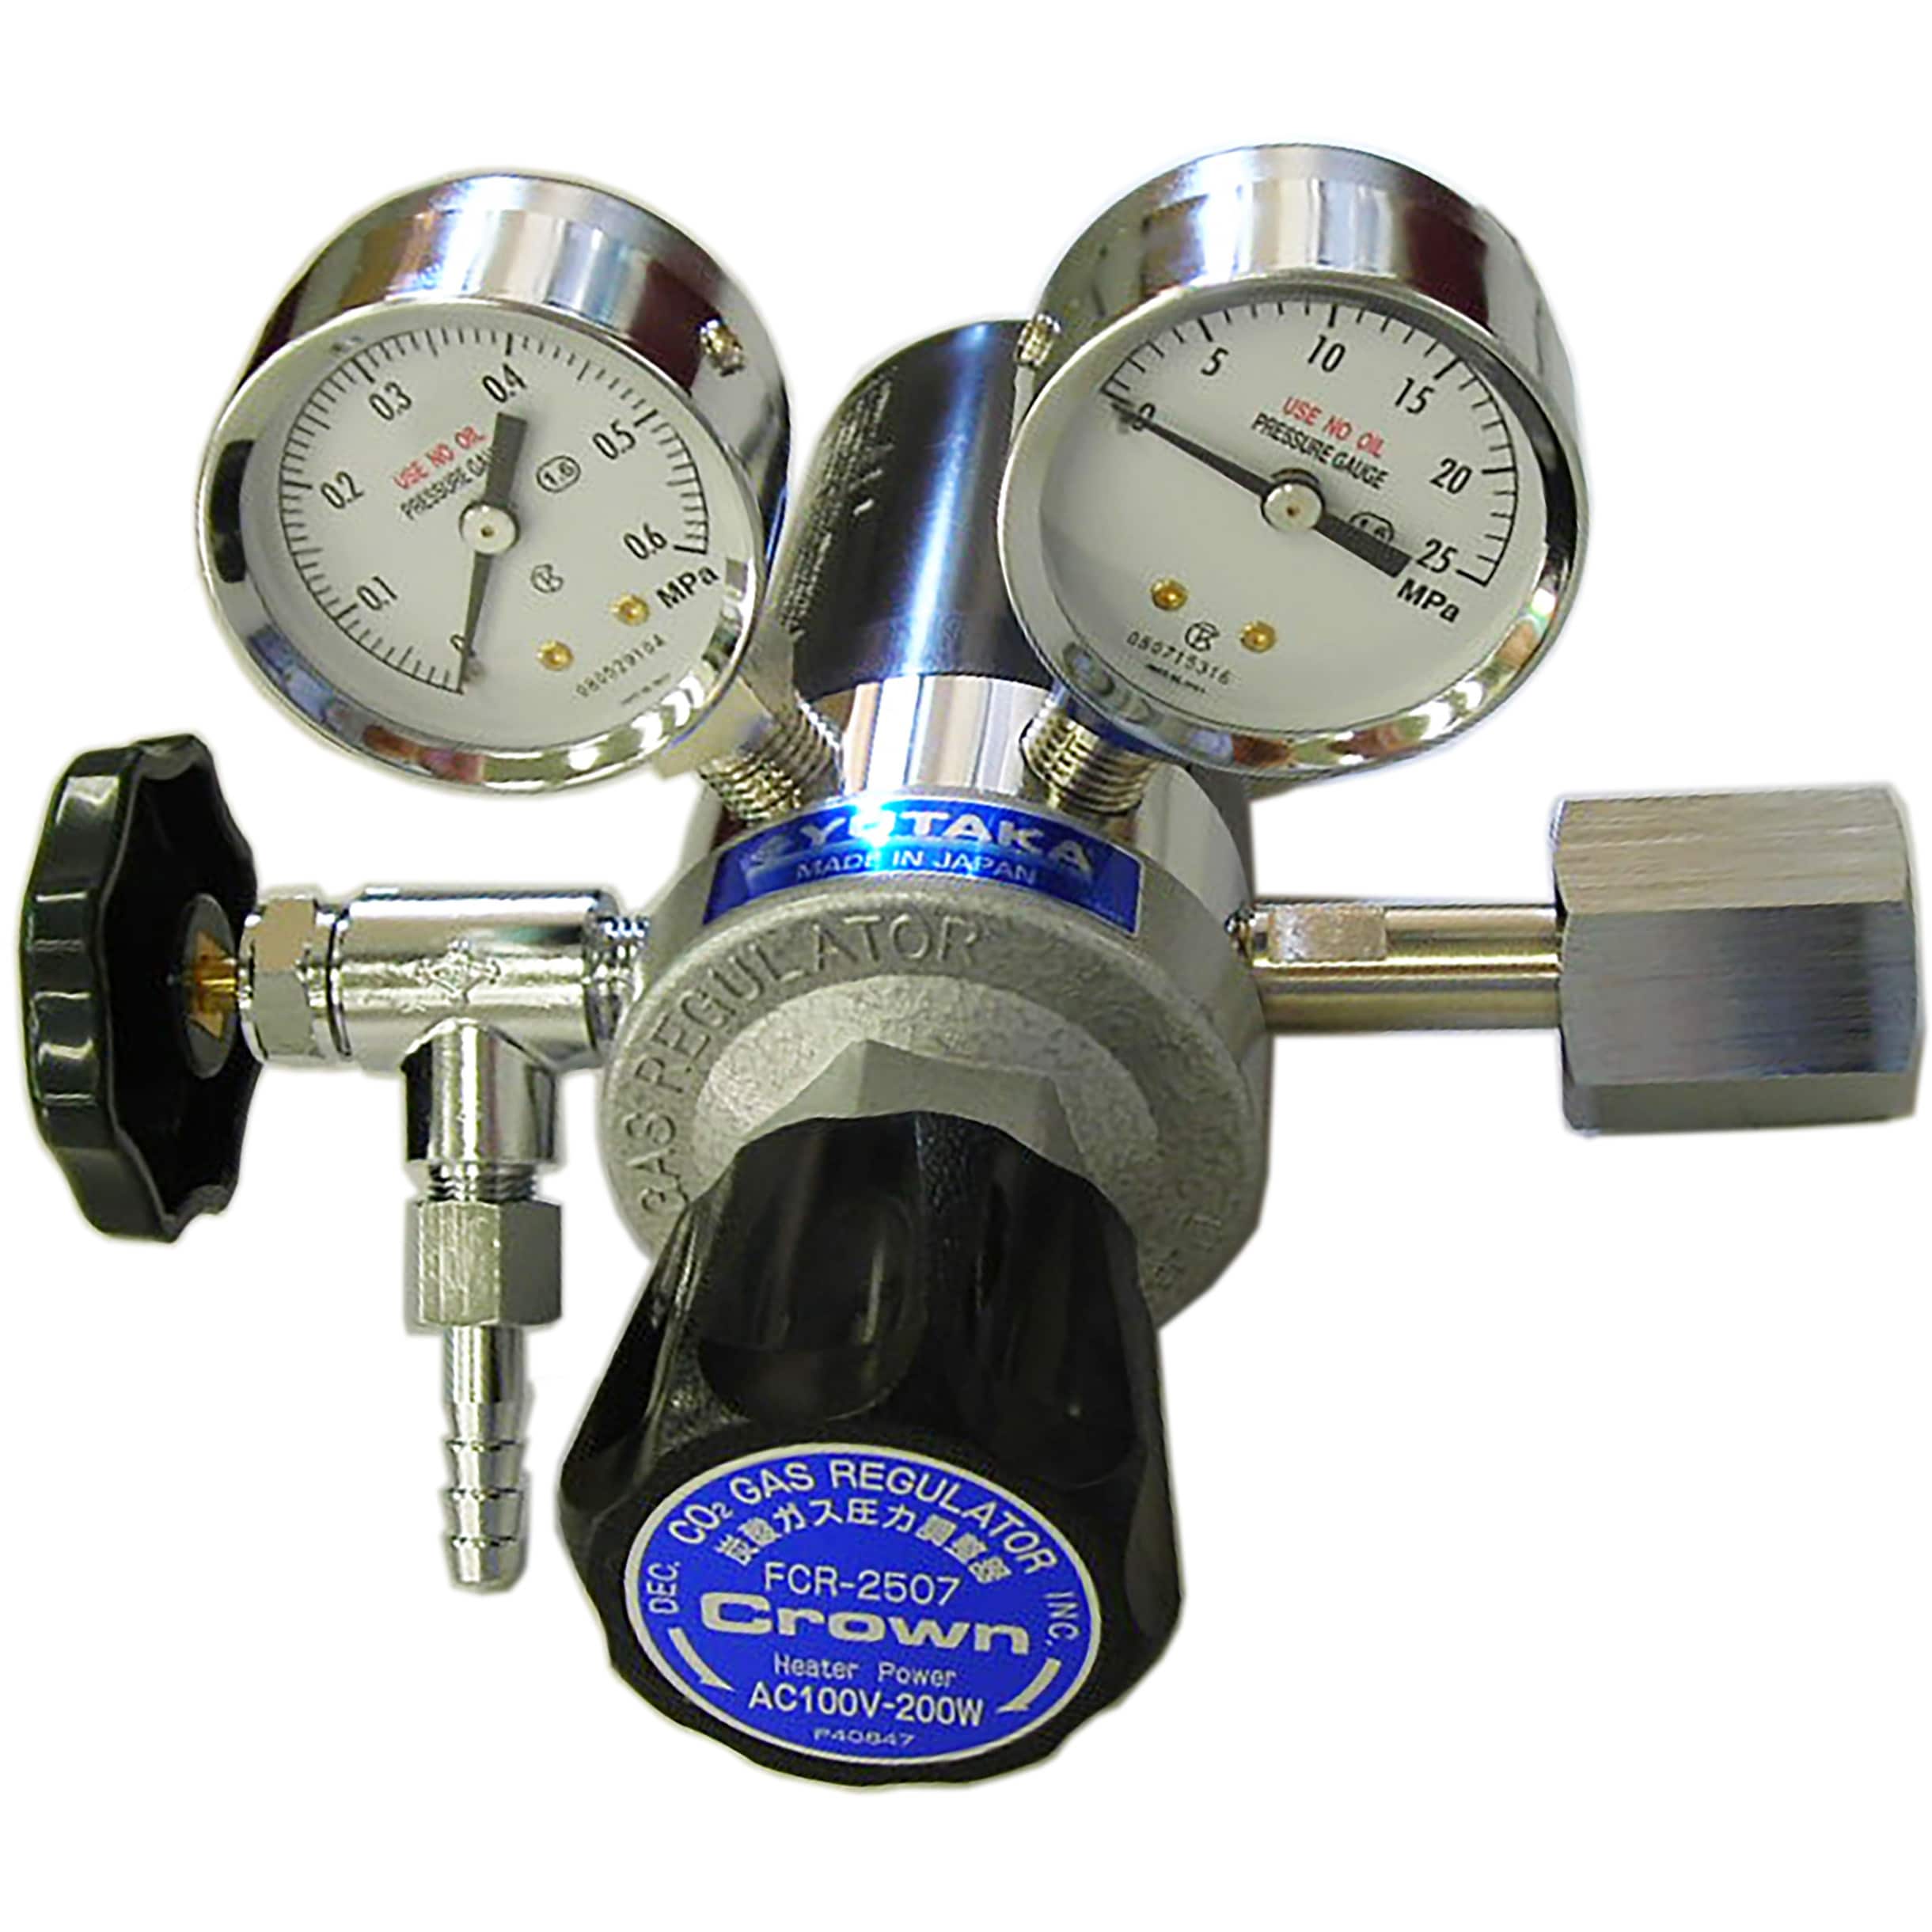 標準ガス用圧力調整器 ユタカ社 型番:gf1-0003-wx-zs0 - その他